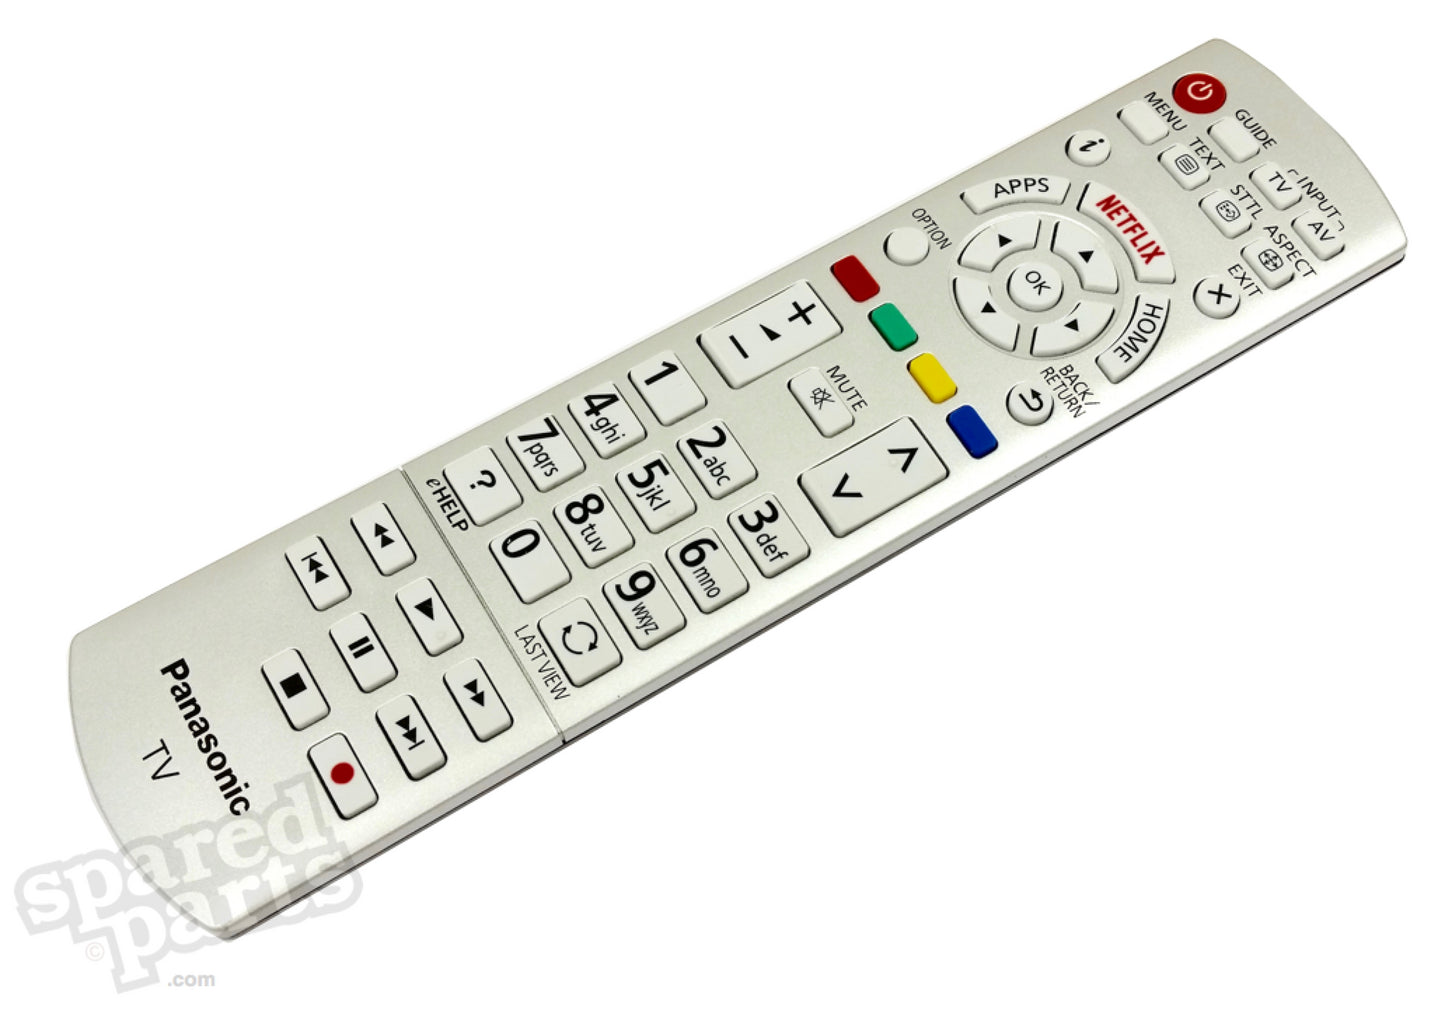 Panasonic N2QAYB001010 Genuine Remote Control